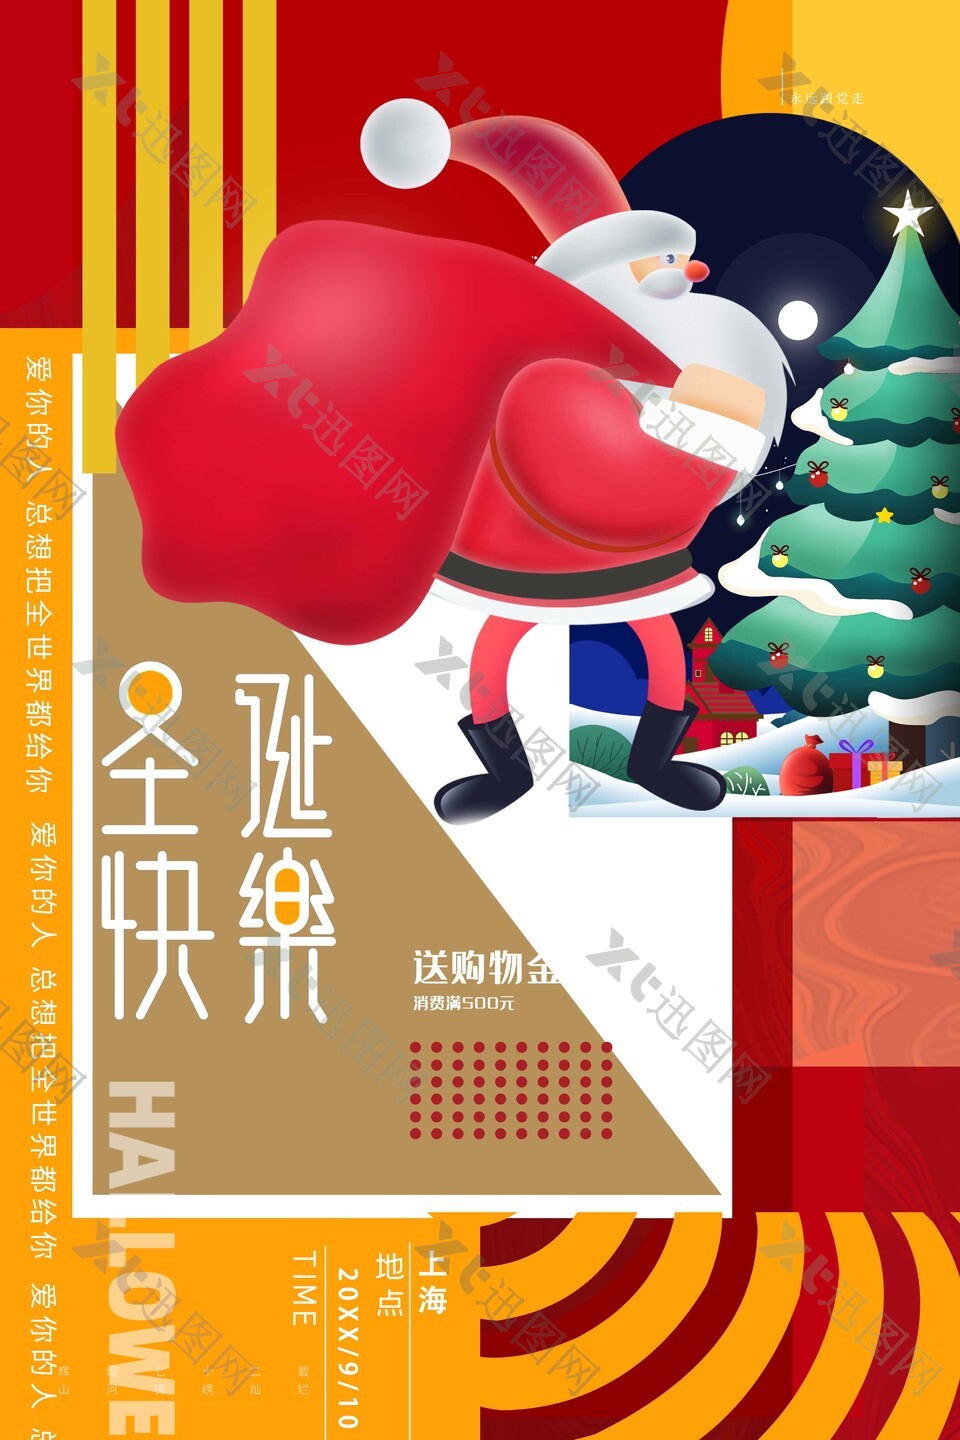 圣诞节快乐商场宣传海报下载